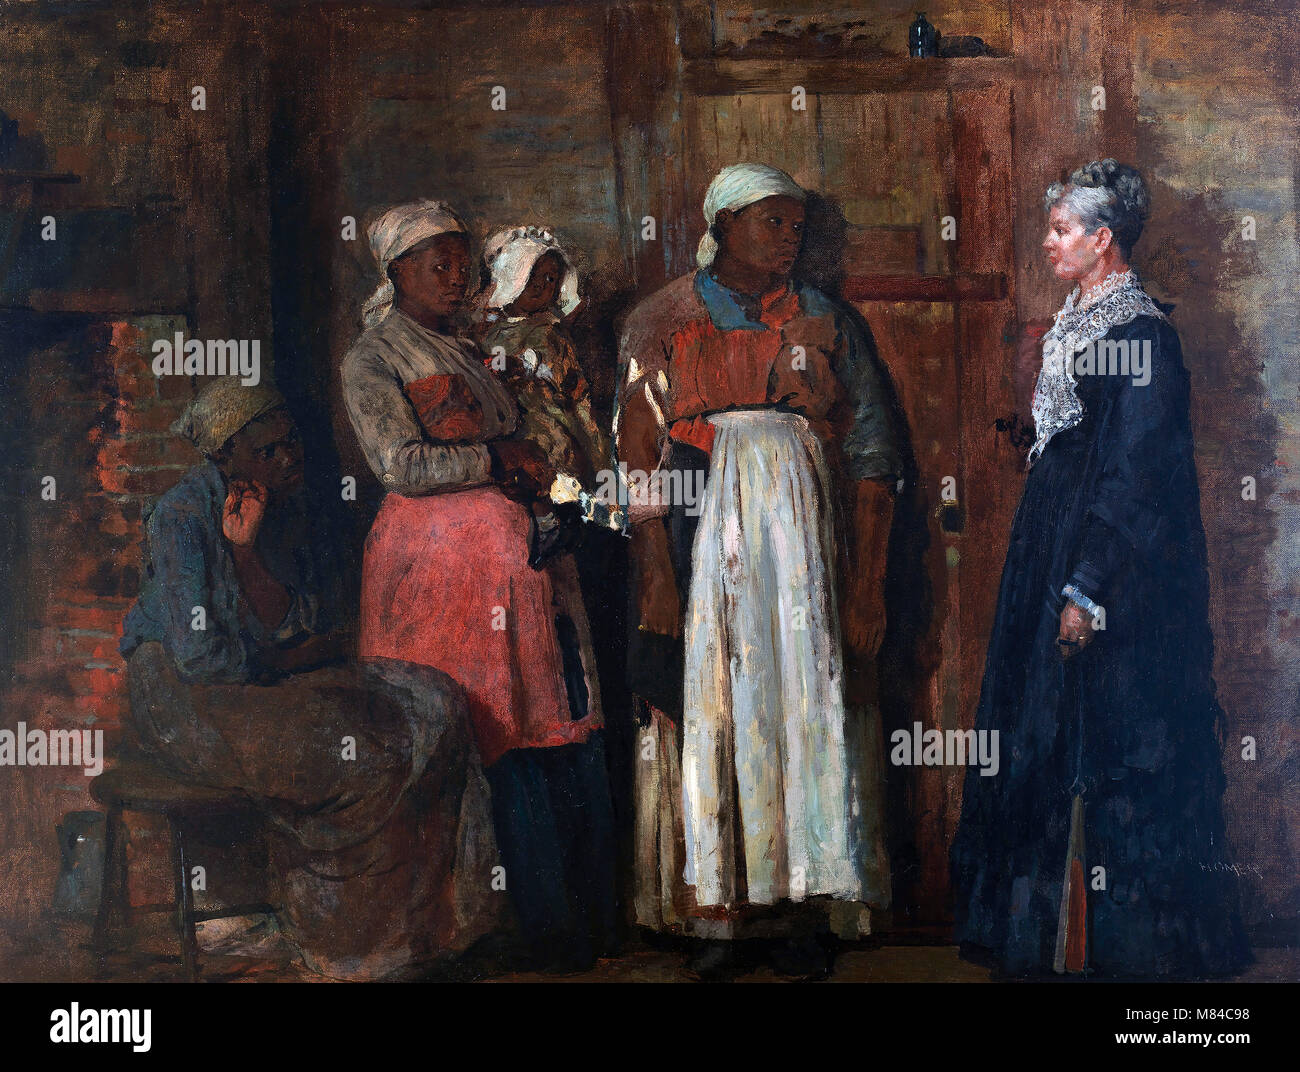 Une visite de la vieille maîtresse par Winslow Homer (1836-1910), huile sur toile, 1876 Banque D'Images